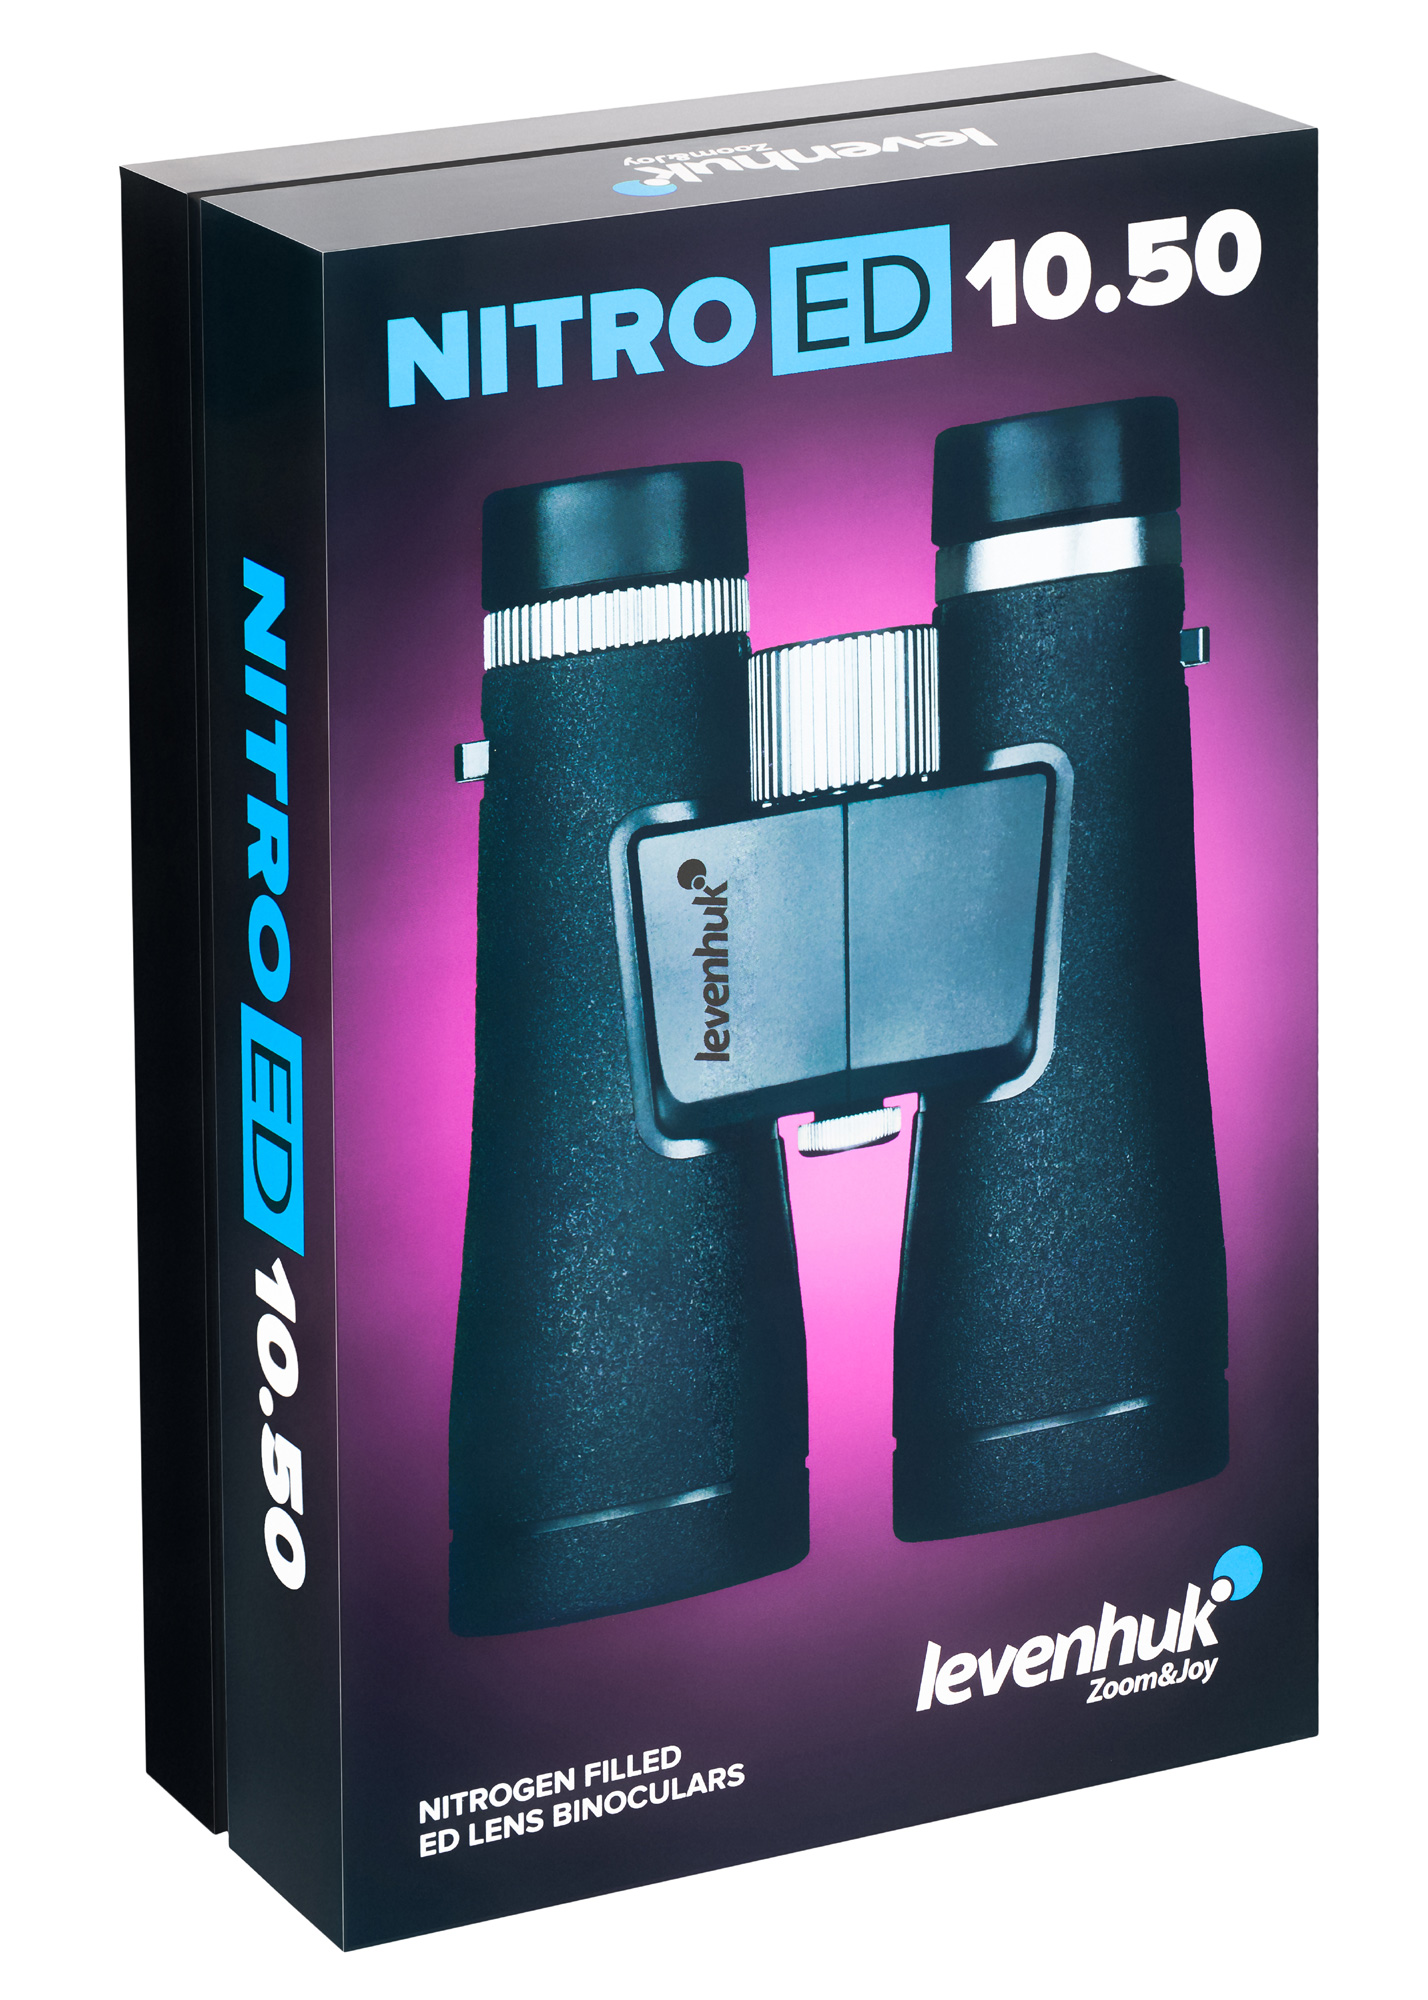 Бинокль Levenhuk Nitro ED 10x50 купить по оптимальной цене,  доставка по России, гарантия качества